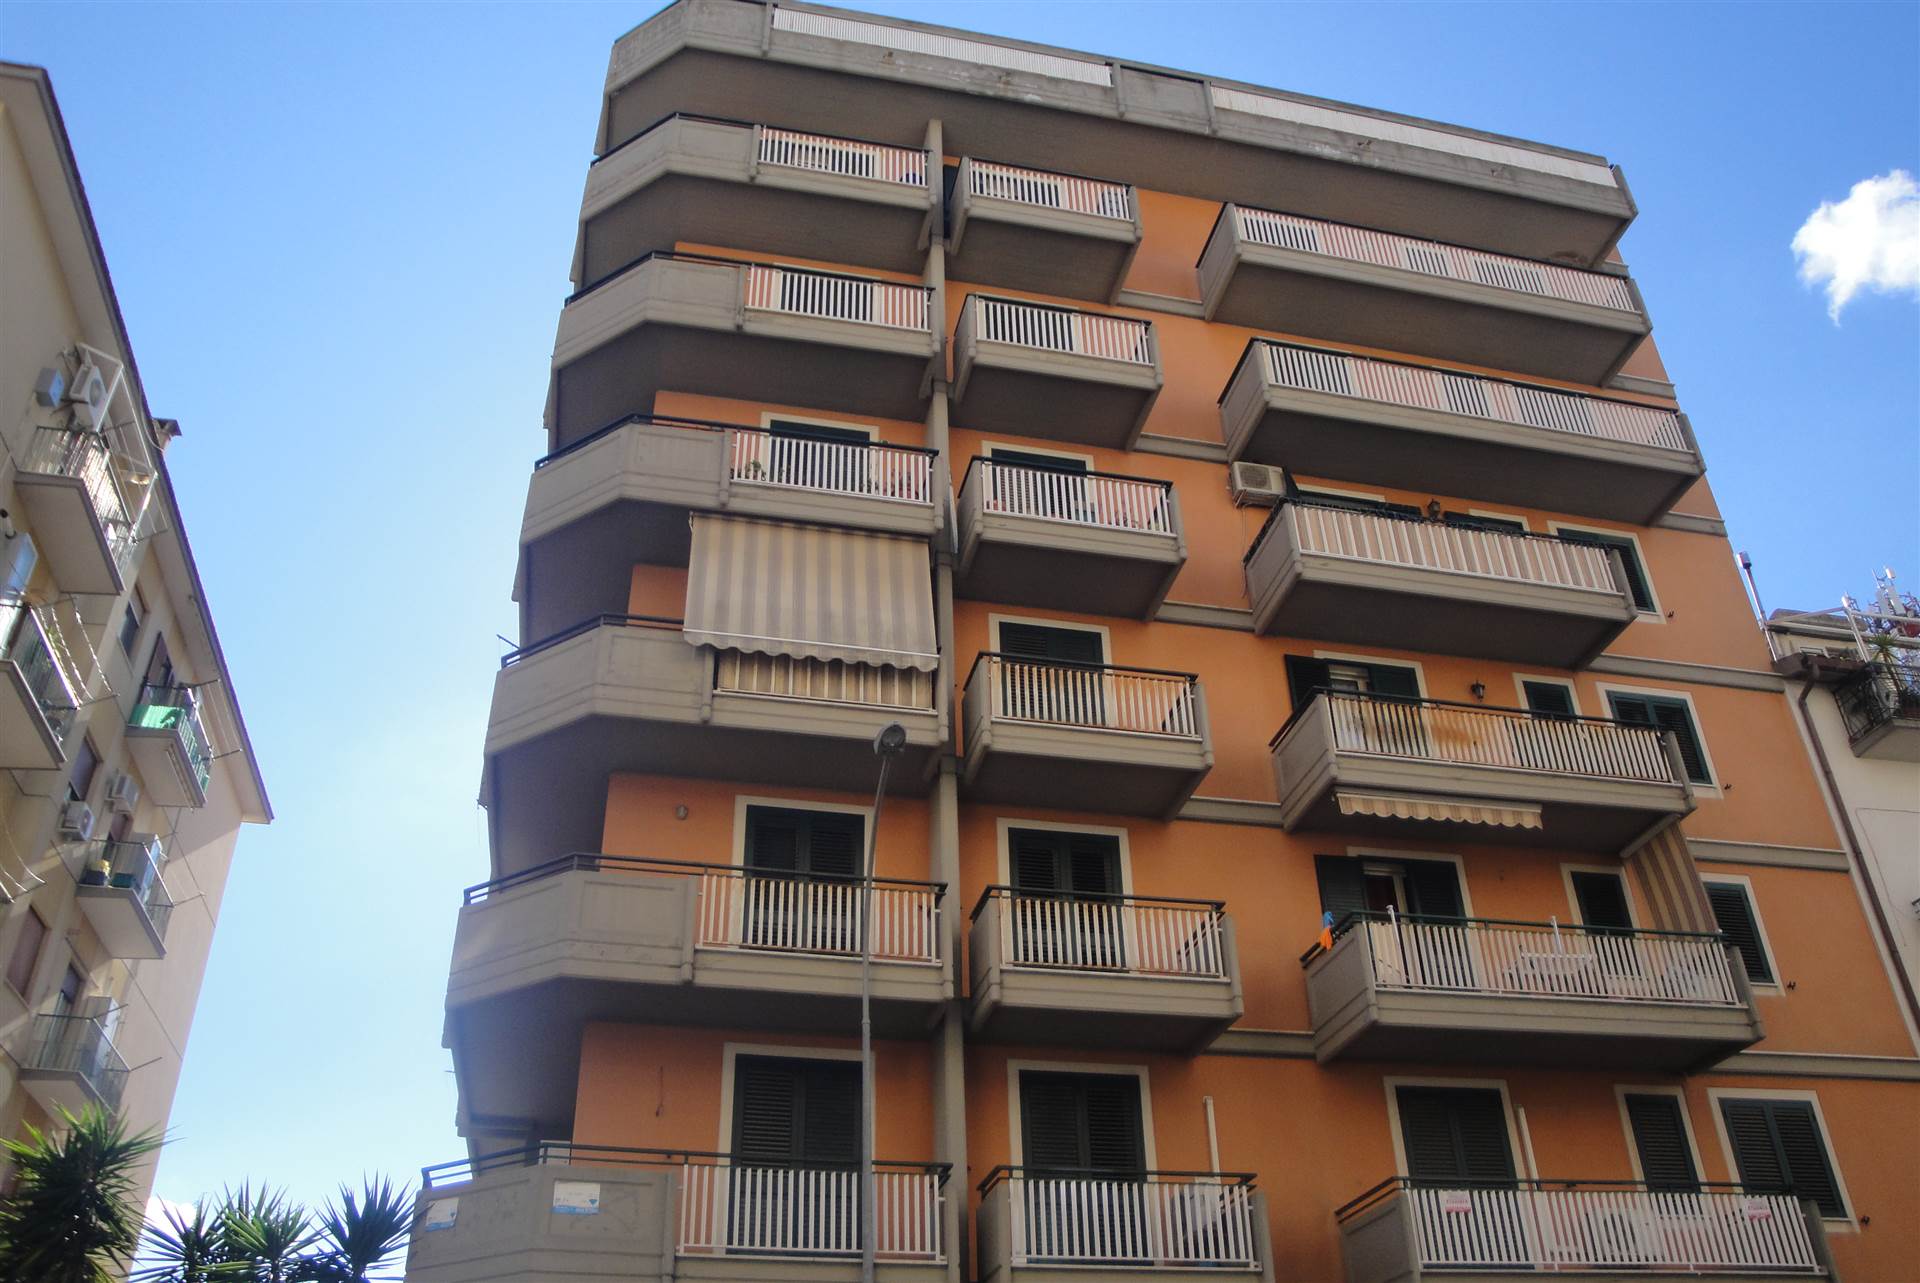 A Caltanissetta ,in via Leone XIII N. 22, Quantum Real Estate propone in vendita un appartamento di MQ 95 posto al 3 piano di uno stabile, di recente 